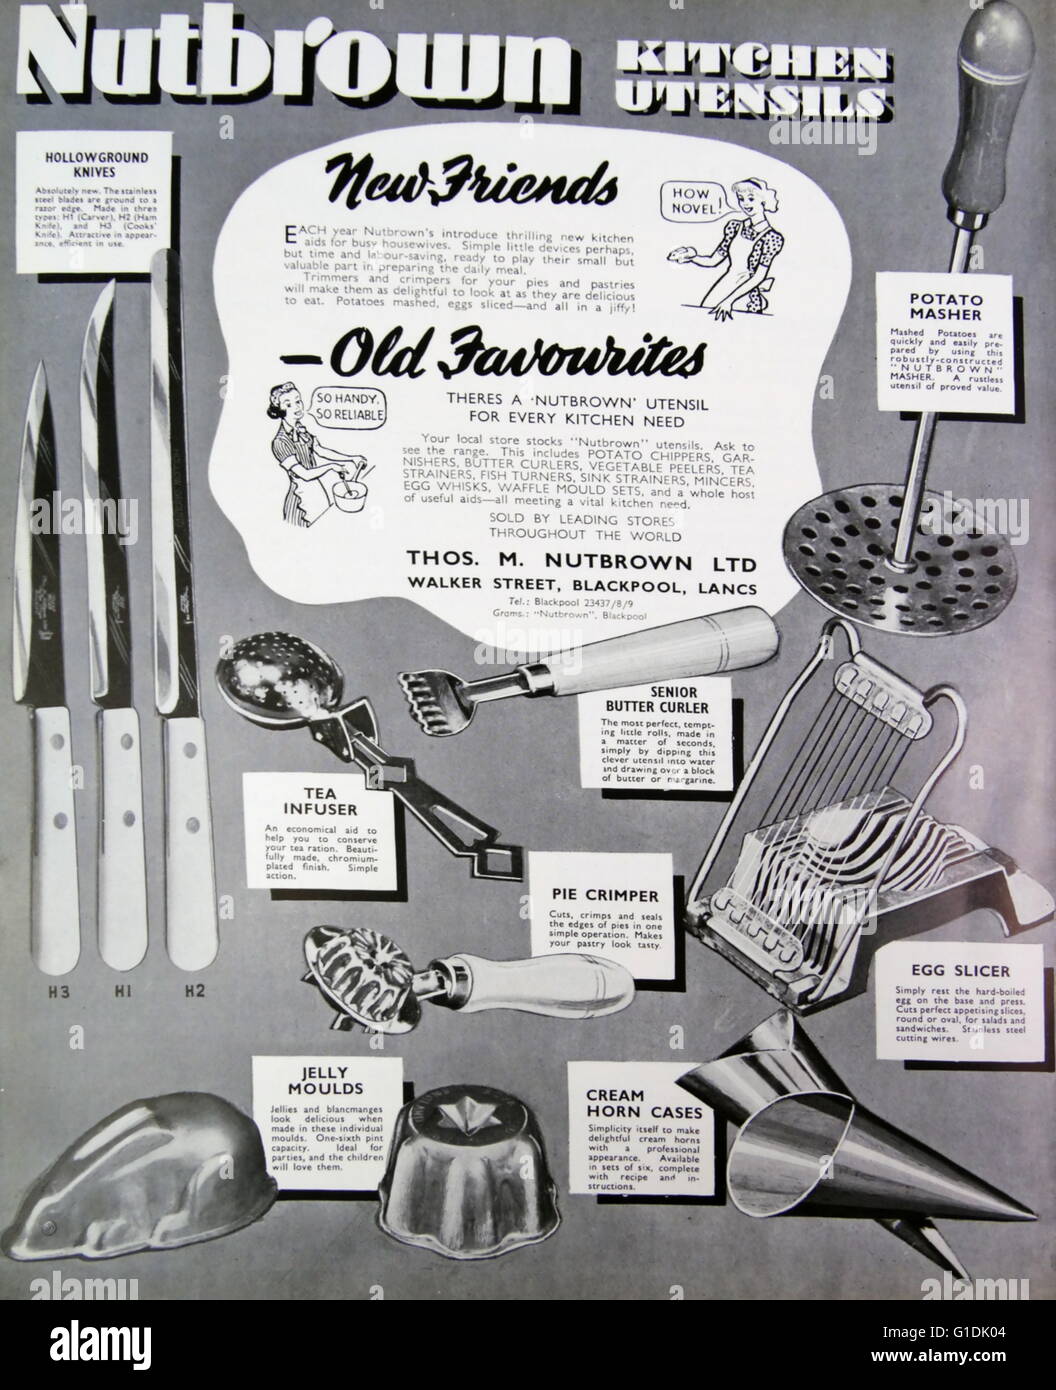 Nutbrown annonce pour les ustensiles de cuisine, y compris pilon à pommes de terre, couteaux, moules et egg slicer. 1950 Banque D'Images